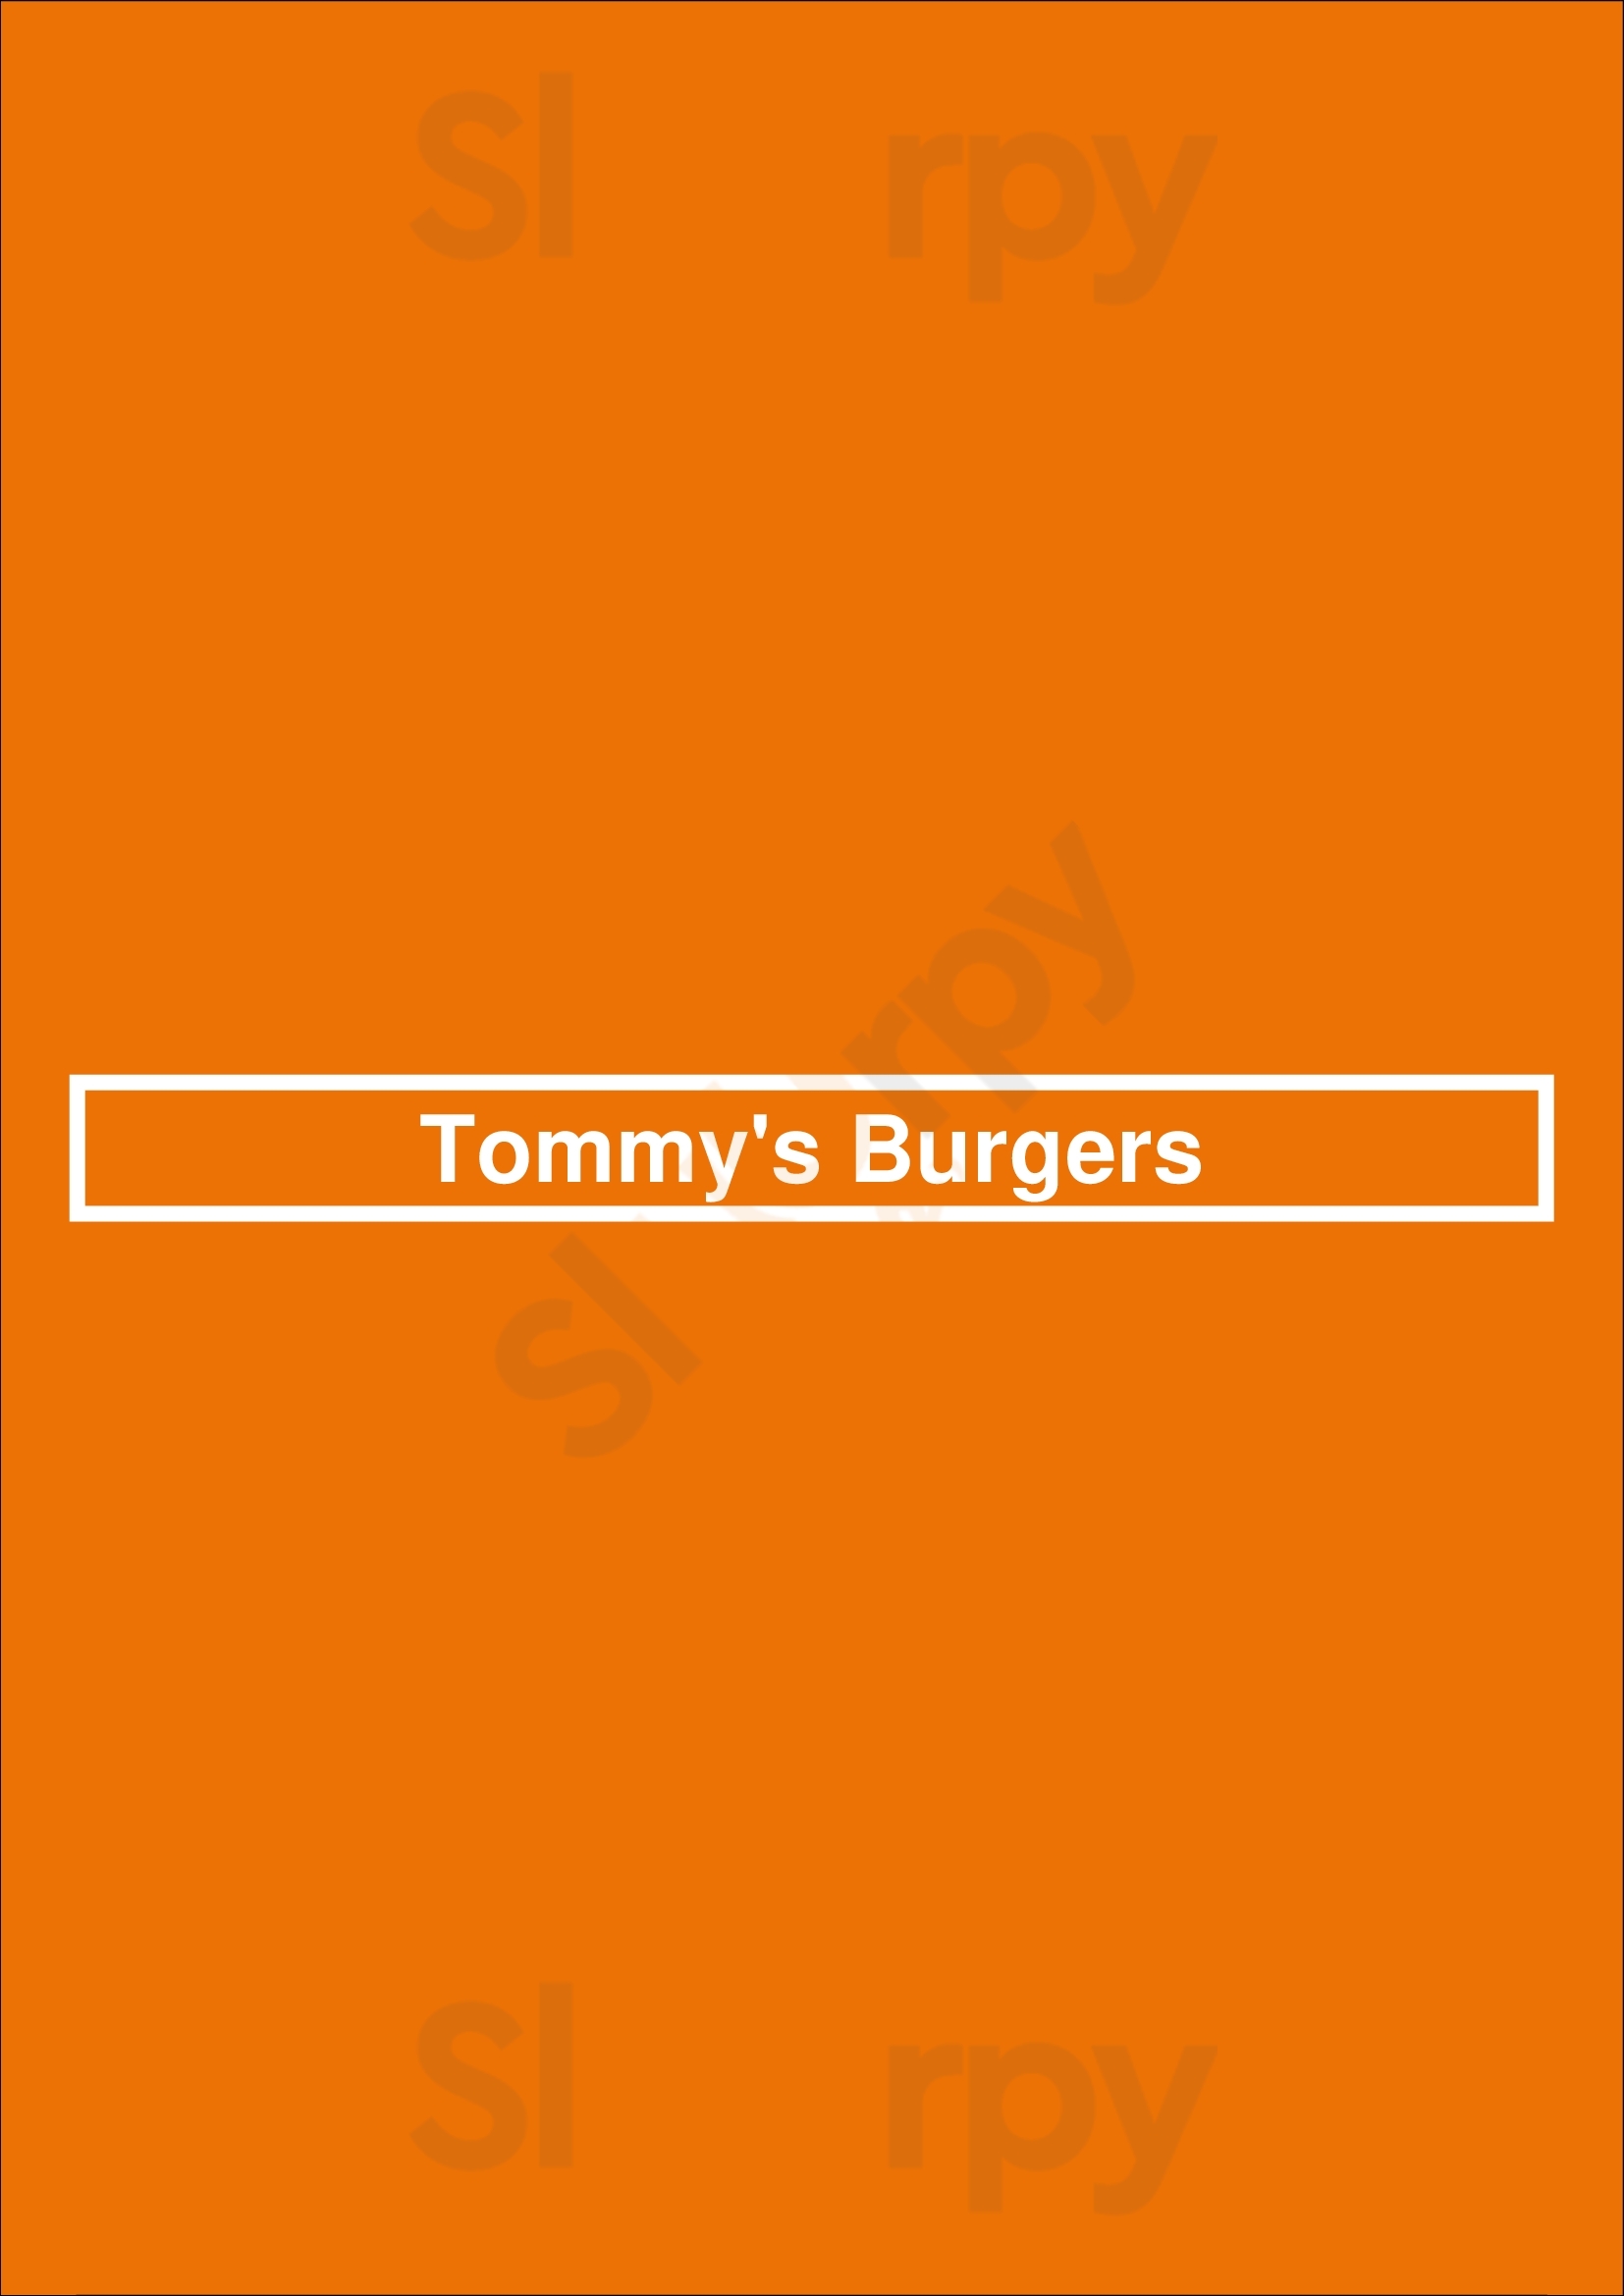 Tommy's Burgers Los Angeles Menu - 1